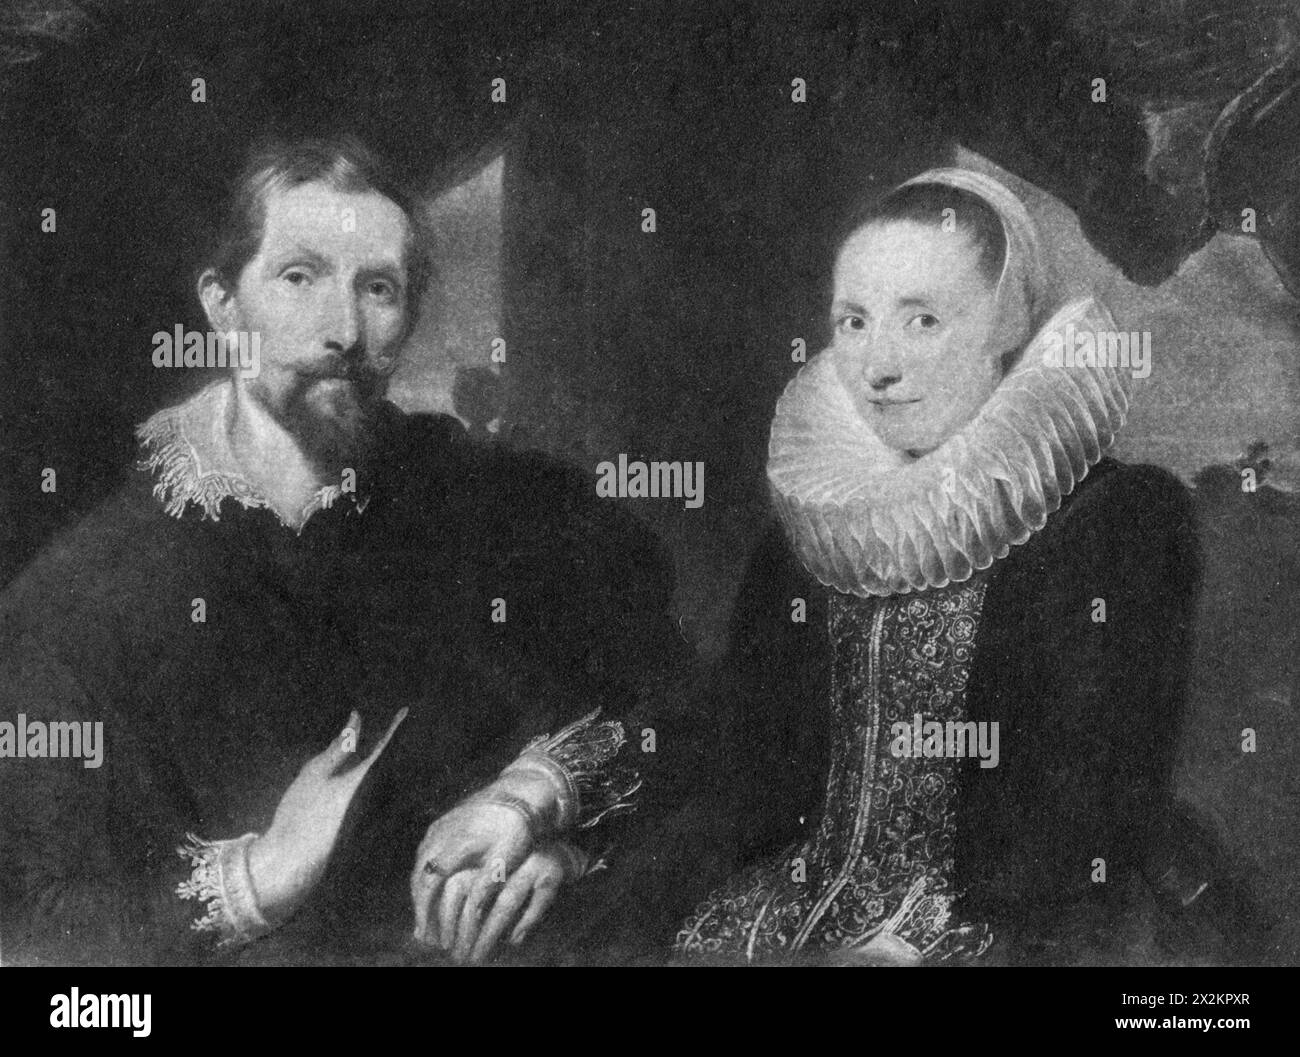 Snyders, Frans, 11.11.1579 - 19.8,1657, pittore fiammingo, con la sua donna, ULTERIORI-DIRITTI-AUTORIZZAZIONE-INFORMAZIONI-NON-DISPONIBILI Foto Stock